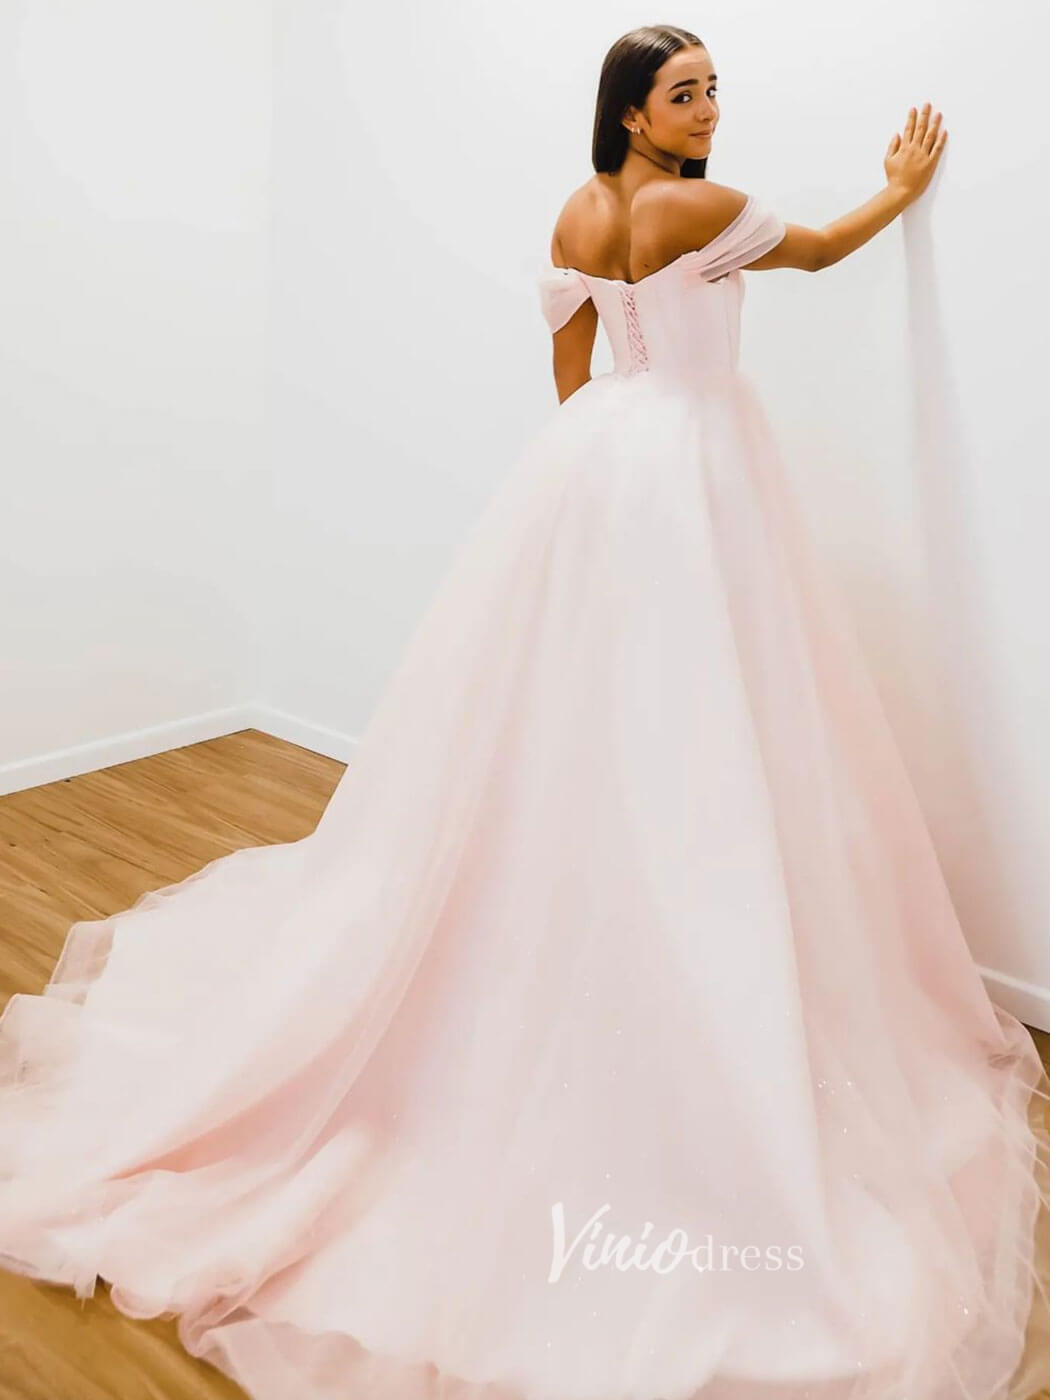 Blush Pink Off the Shoulder Prom Dresses A-Line Tulle Evening Dress FD3093-prom dresses-Viniodress-Viniodress